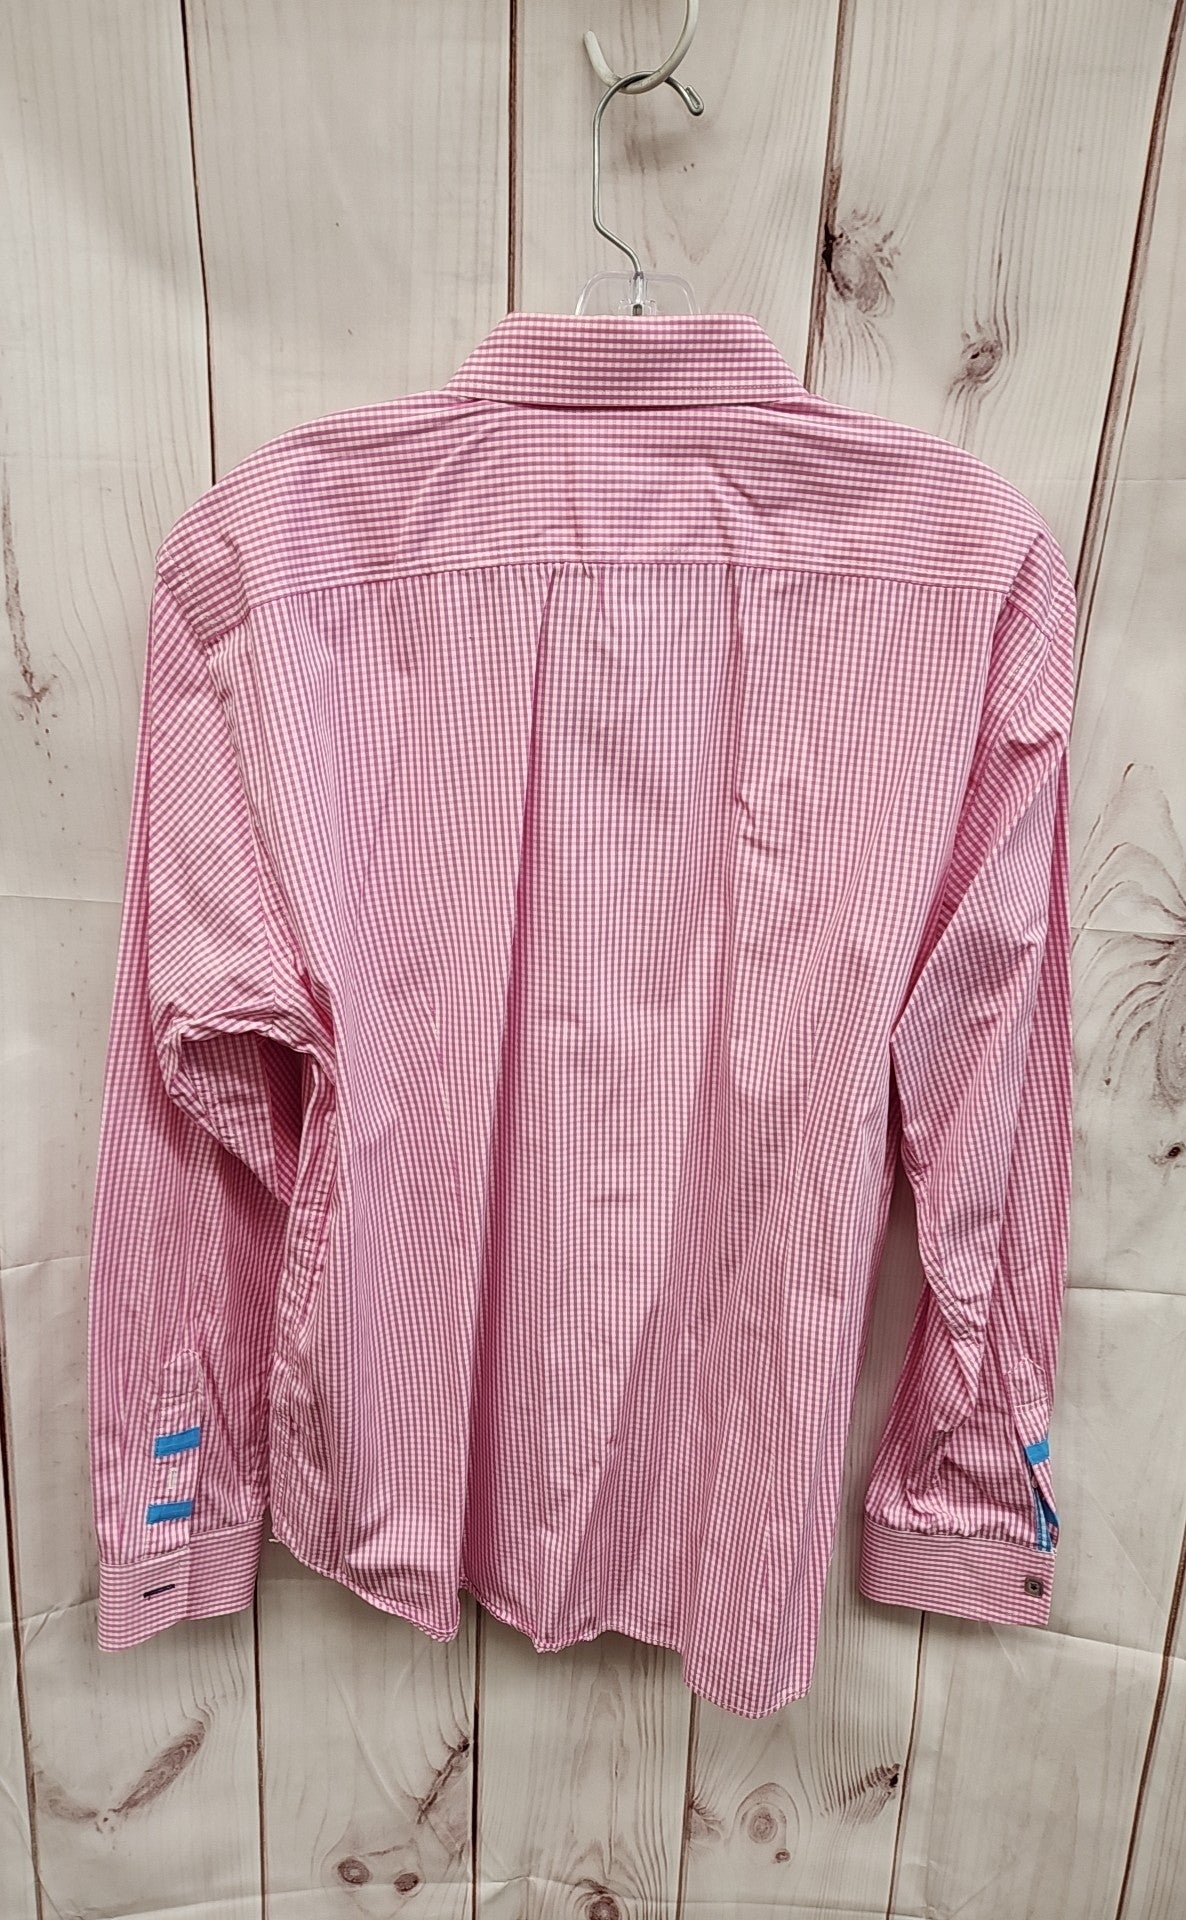 Jeremy Argyle Men's Size L Pink Shirt